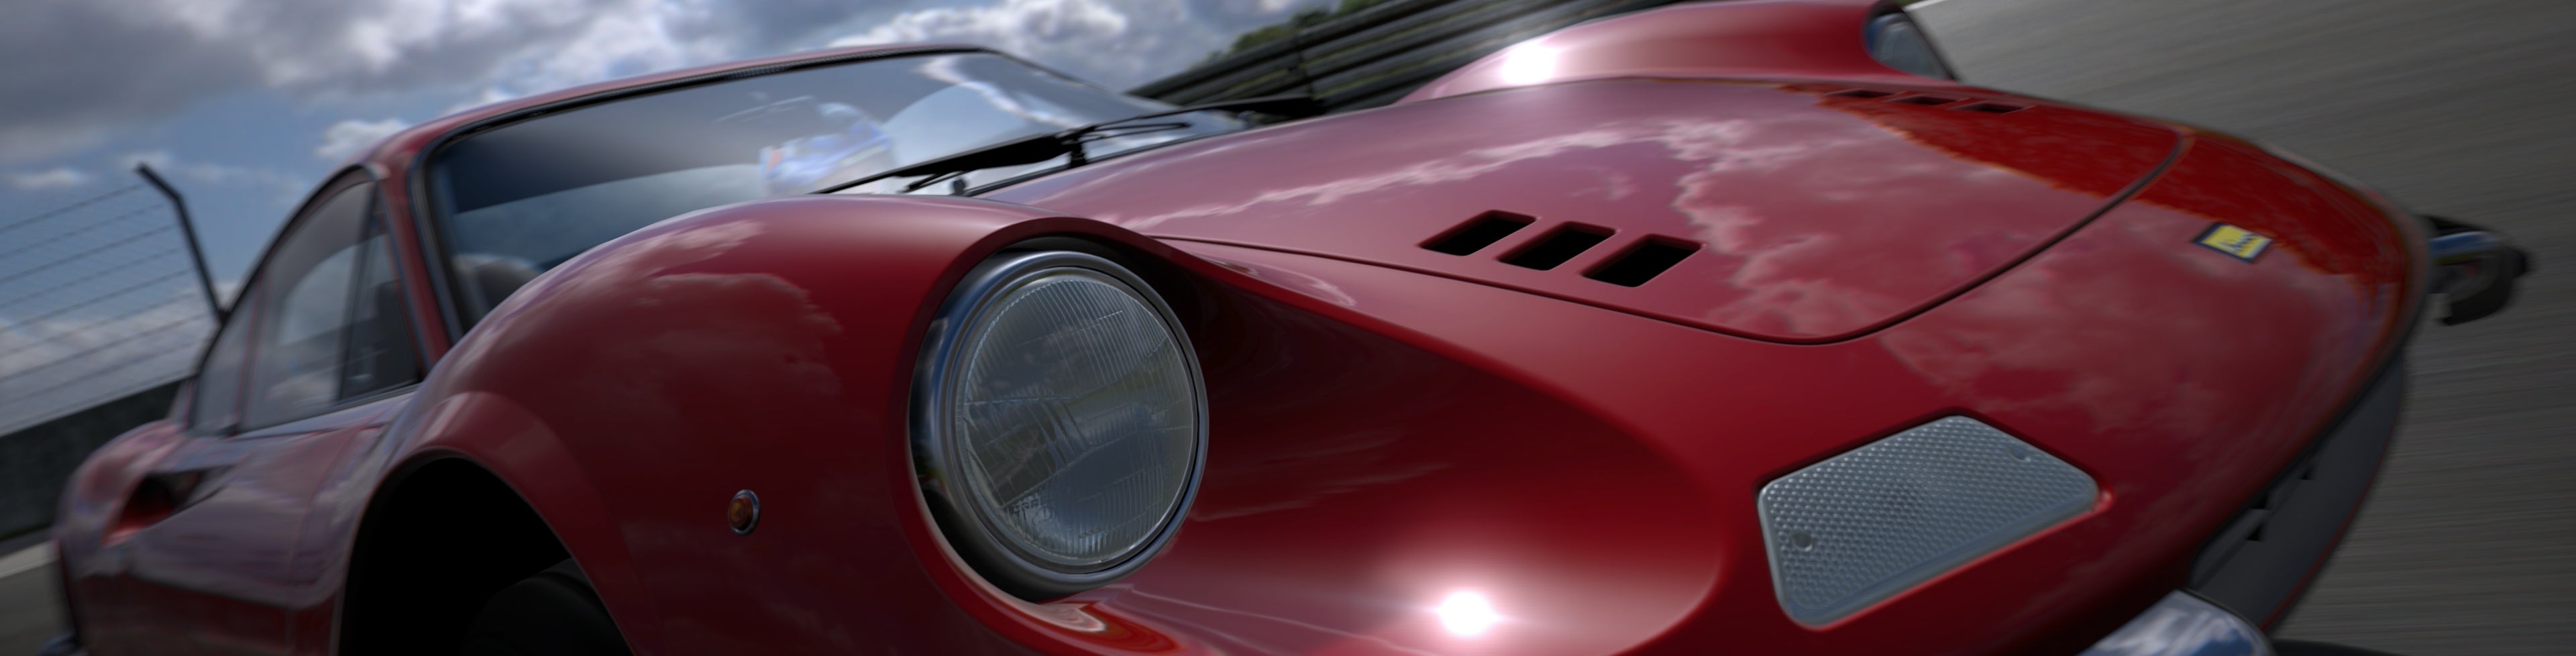 Afbeeldingen van Gran Turismo 6 aangekondigd